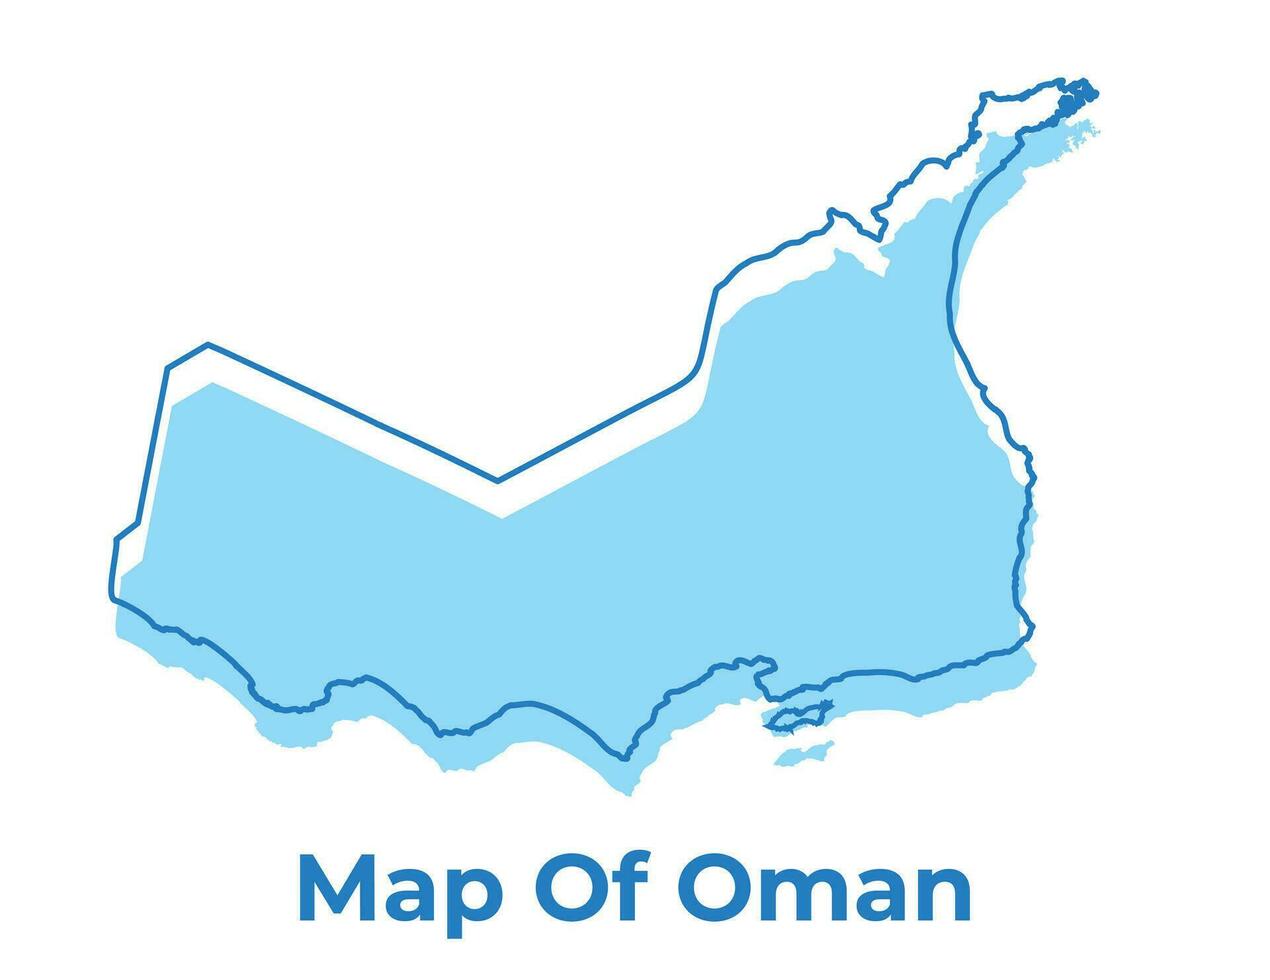 Oman gemakkelijk schets kaart vector illustratie